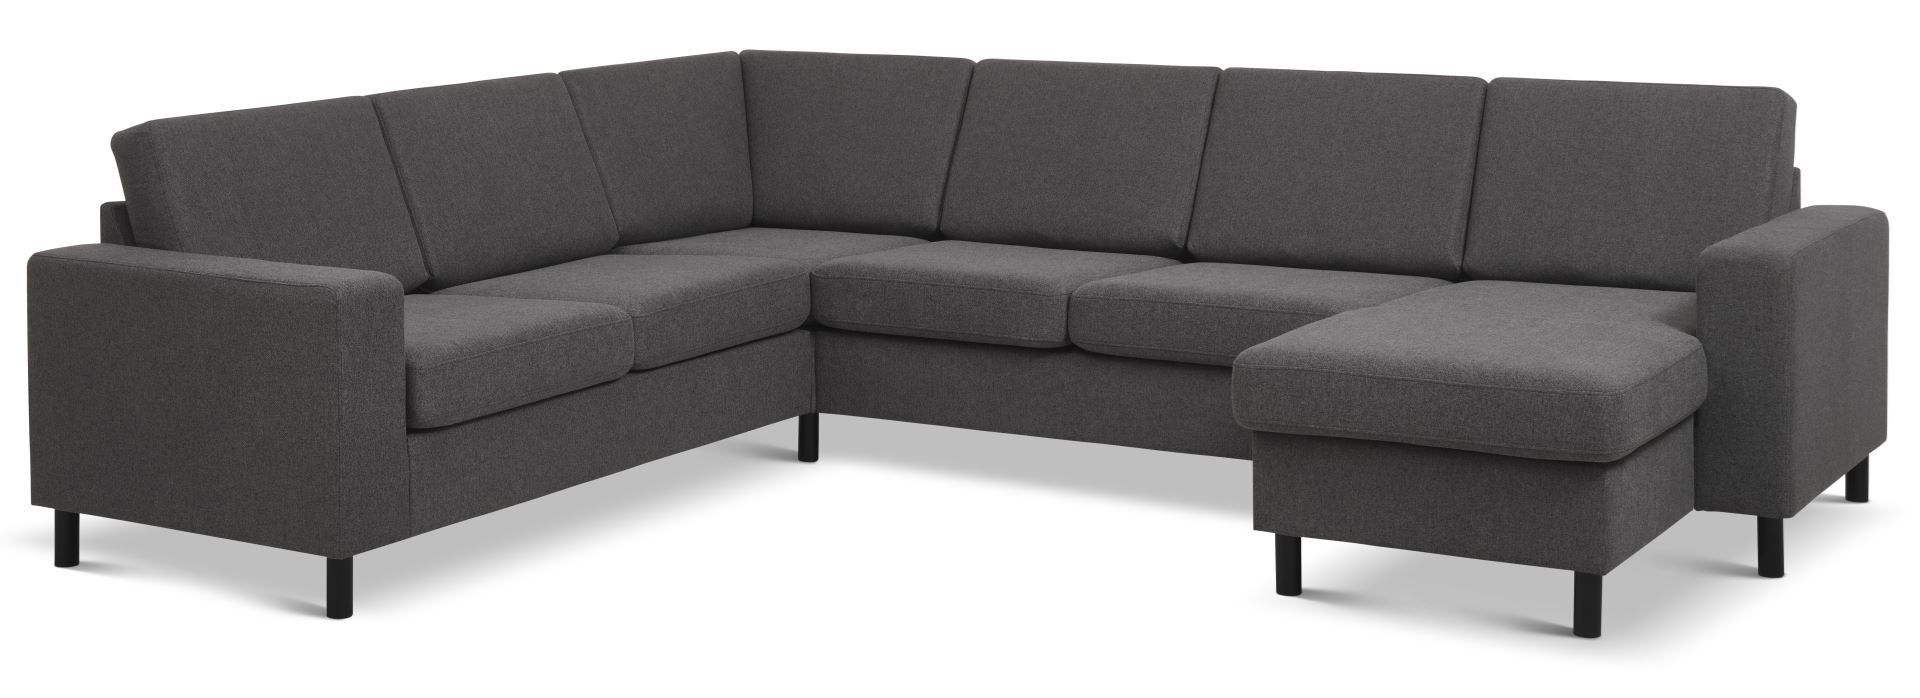 Pan set 6 U 2C3D sofa med chaiselong - antracitgrå polyester stof og sort træ